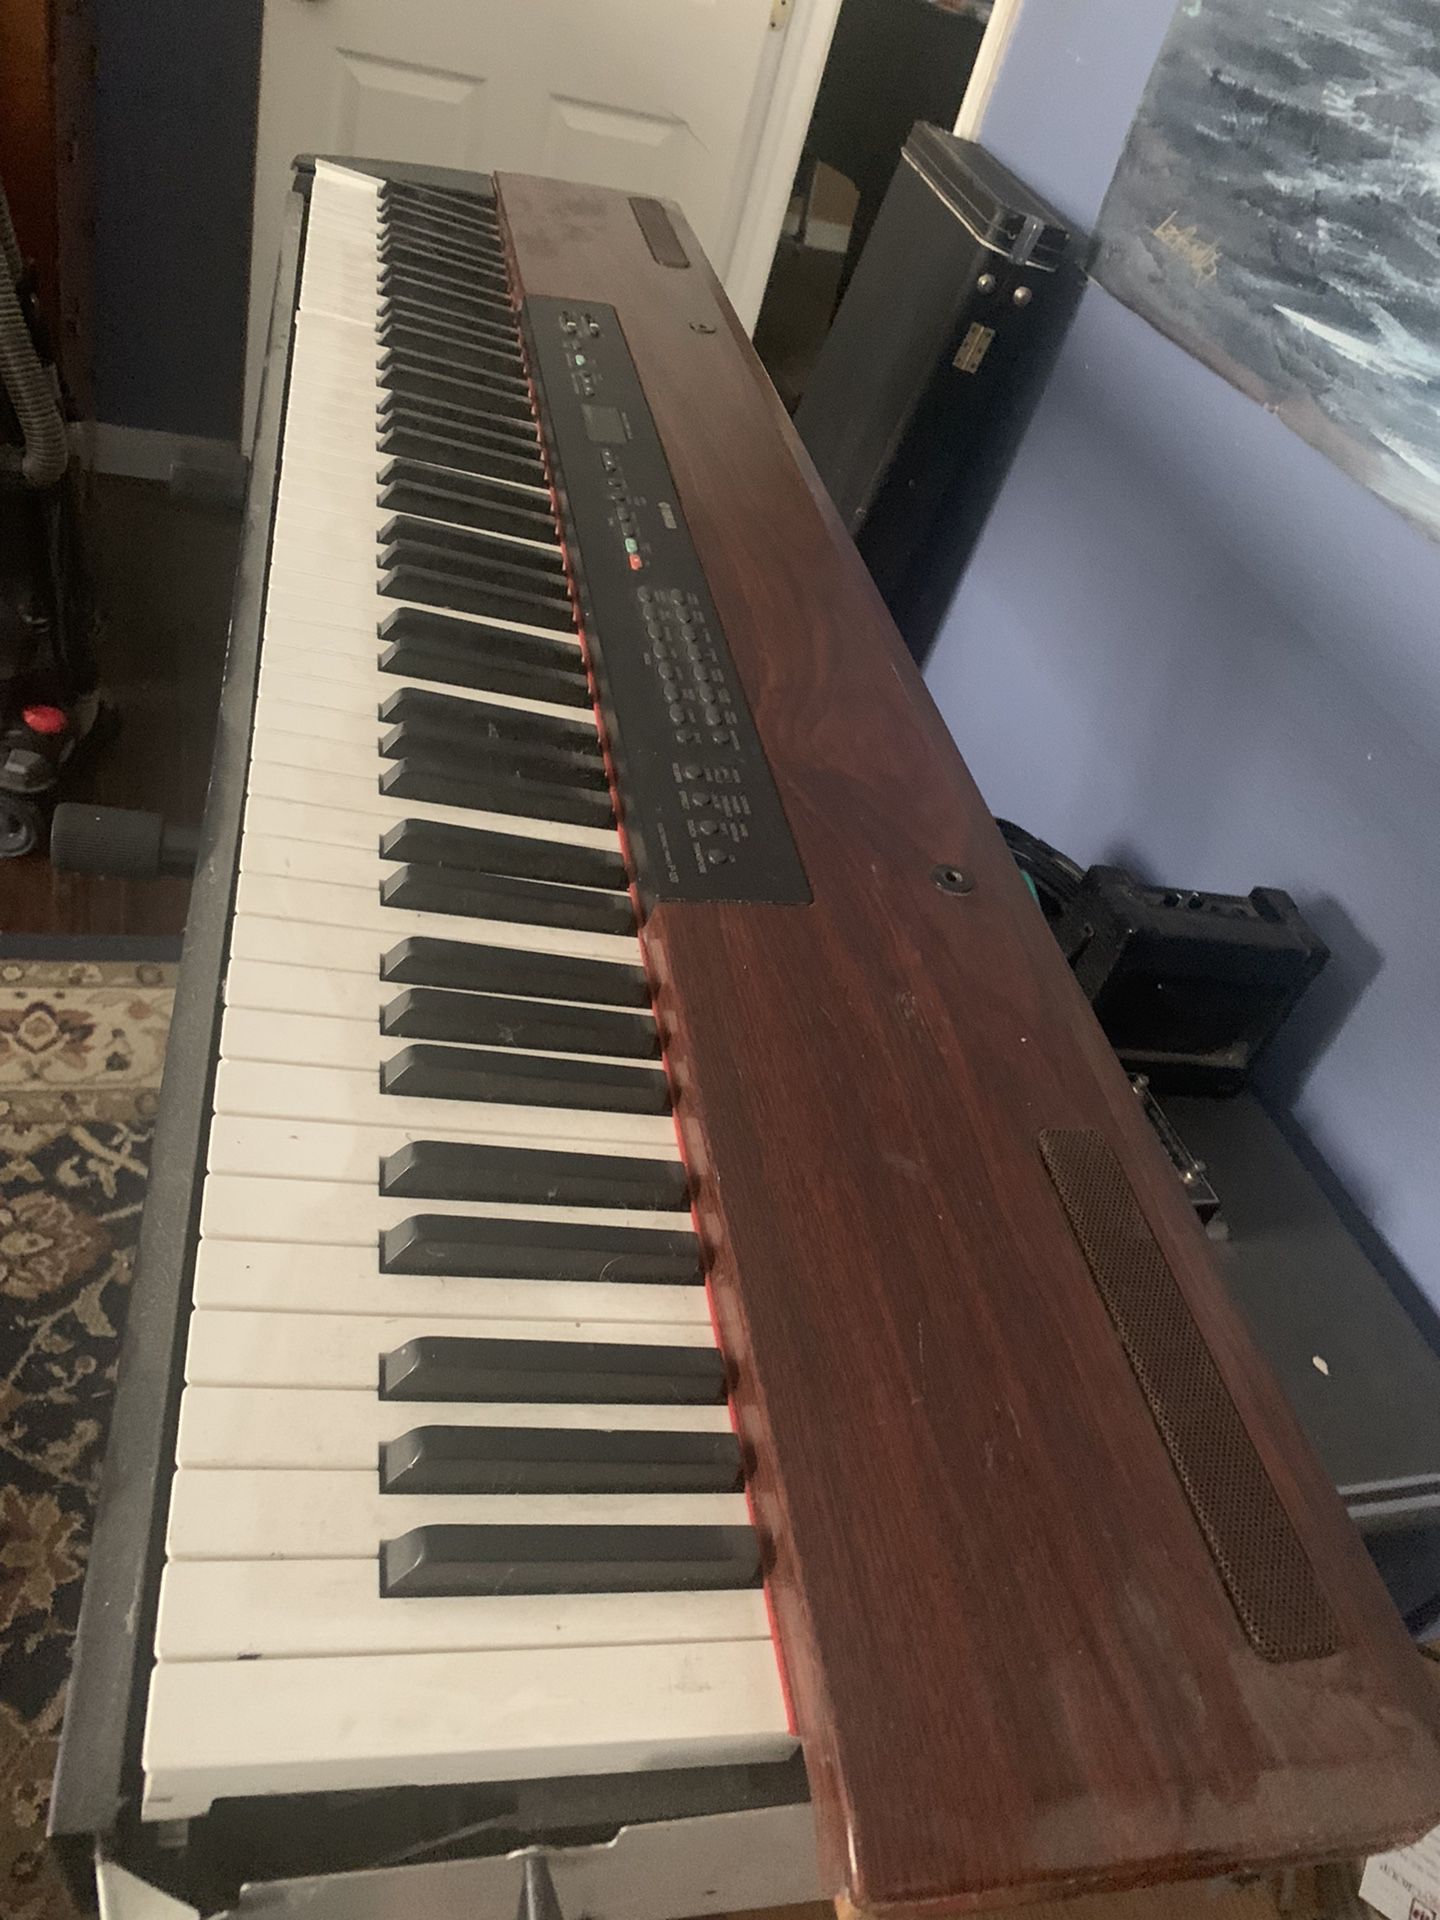 Yamaha Keyboard 